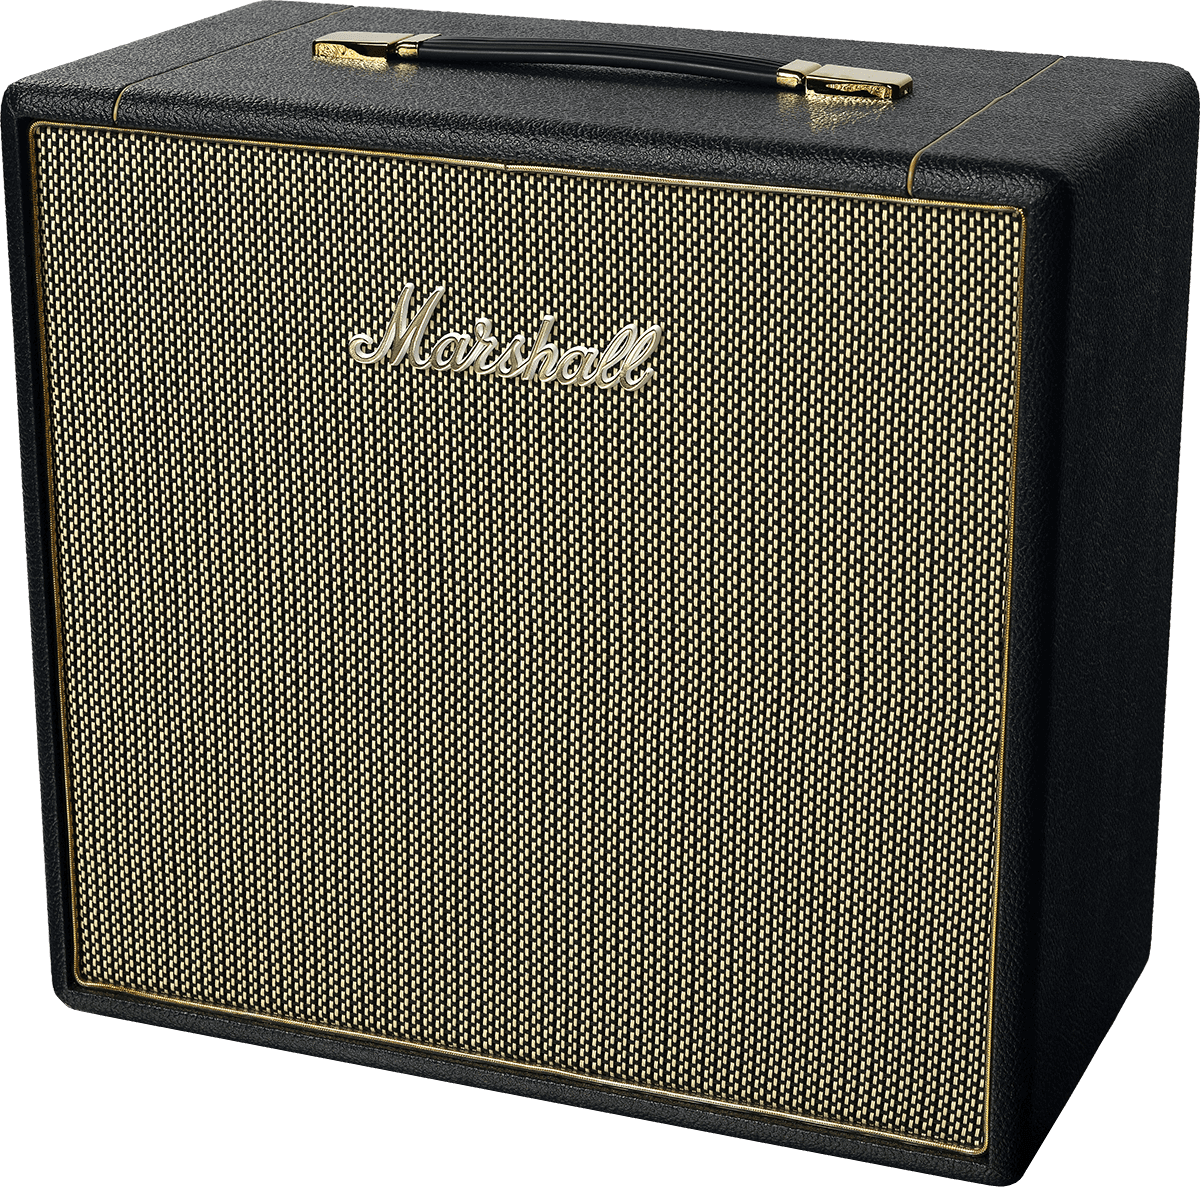 Marshall Studio Vintage 1x12 - Cabina amplificador para guitarra eléctrica - Variation 3